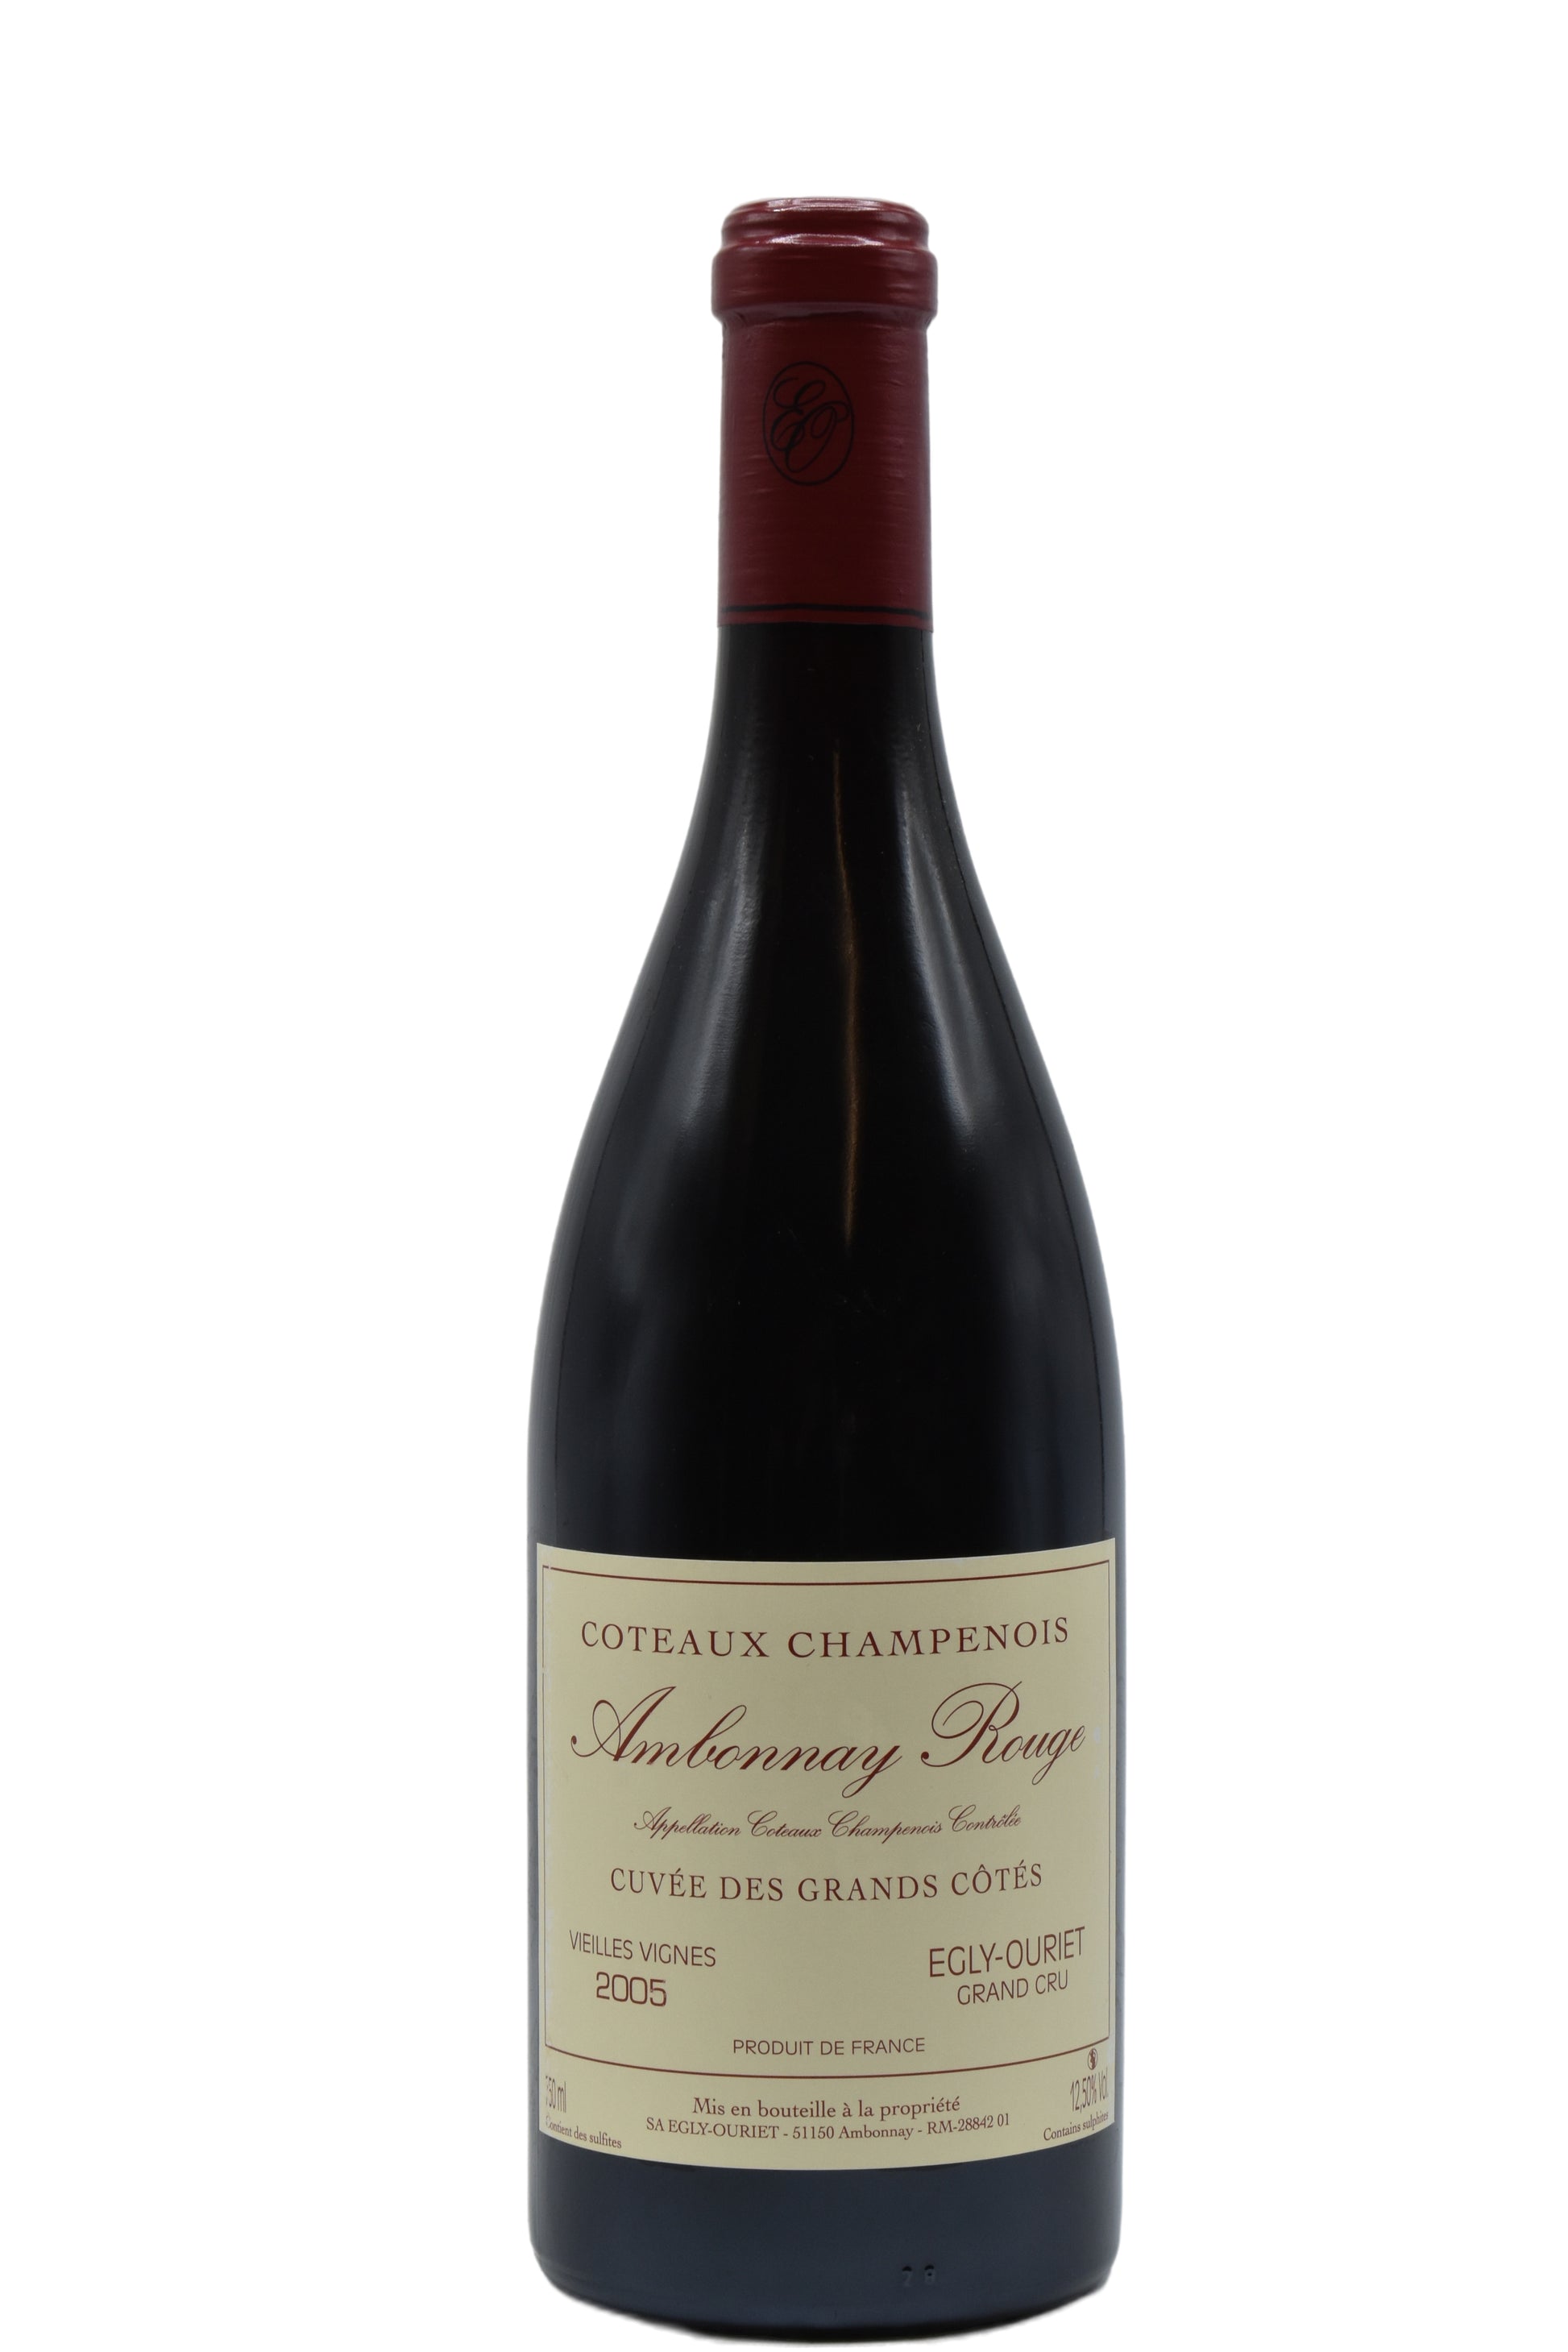 2005 Egly-Ouriet Coteaux Champenois, Ambonnay Rouge, Cuvee des Grands Cotes VV 750ml - Walker Wine Co.